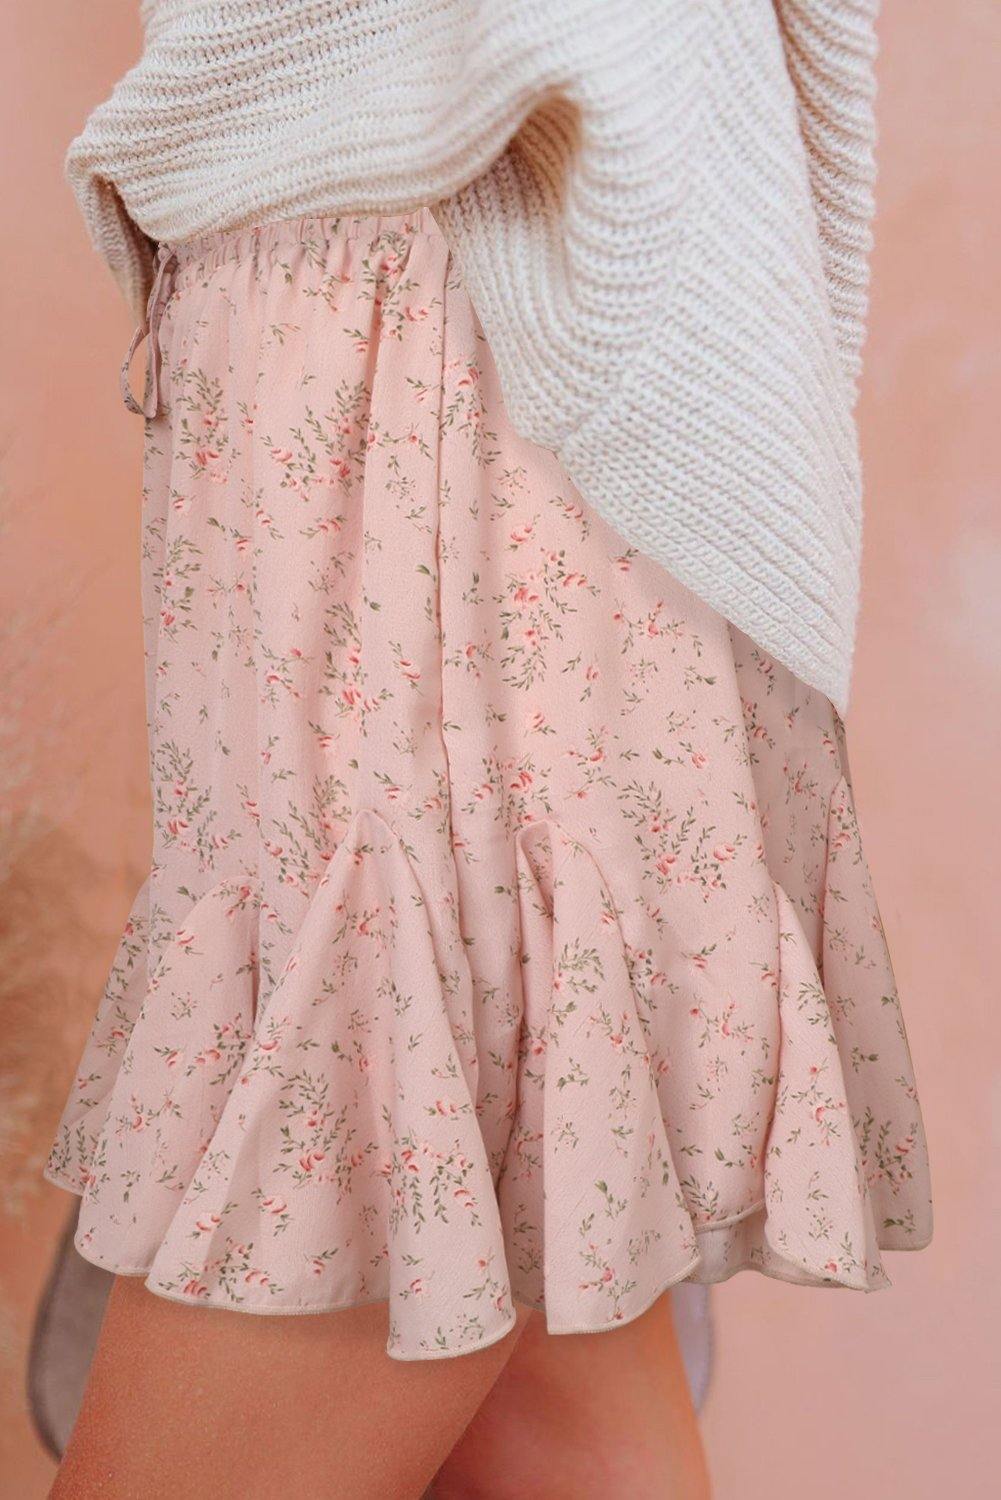 Ruffled Floral Mini Skirt - L & M Kee, LLC